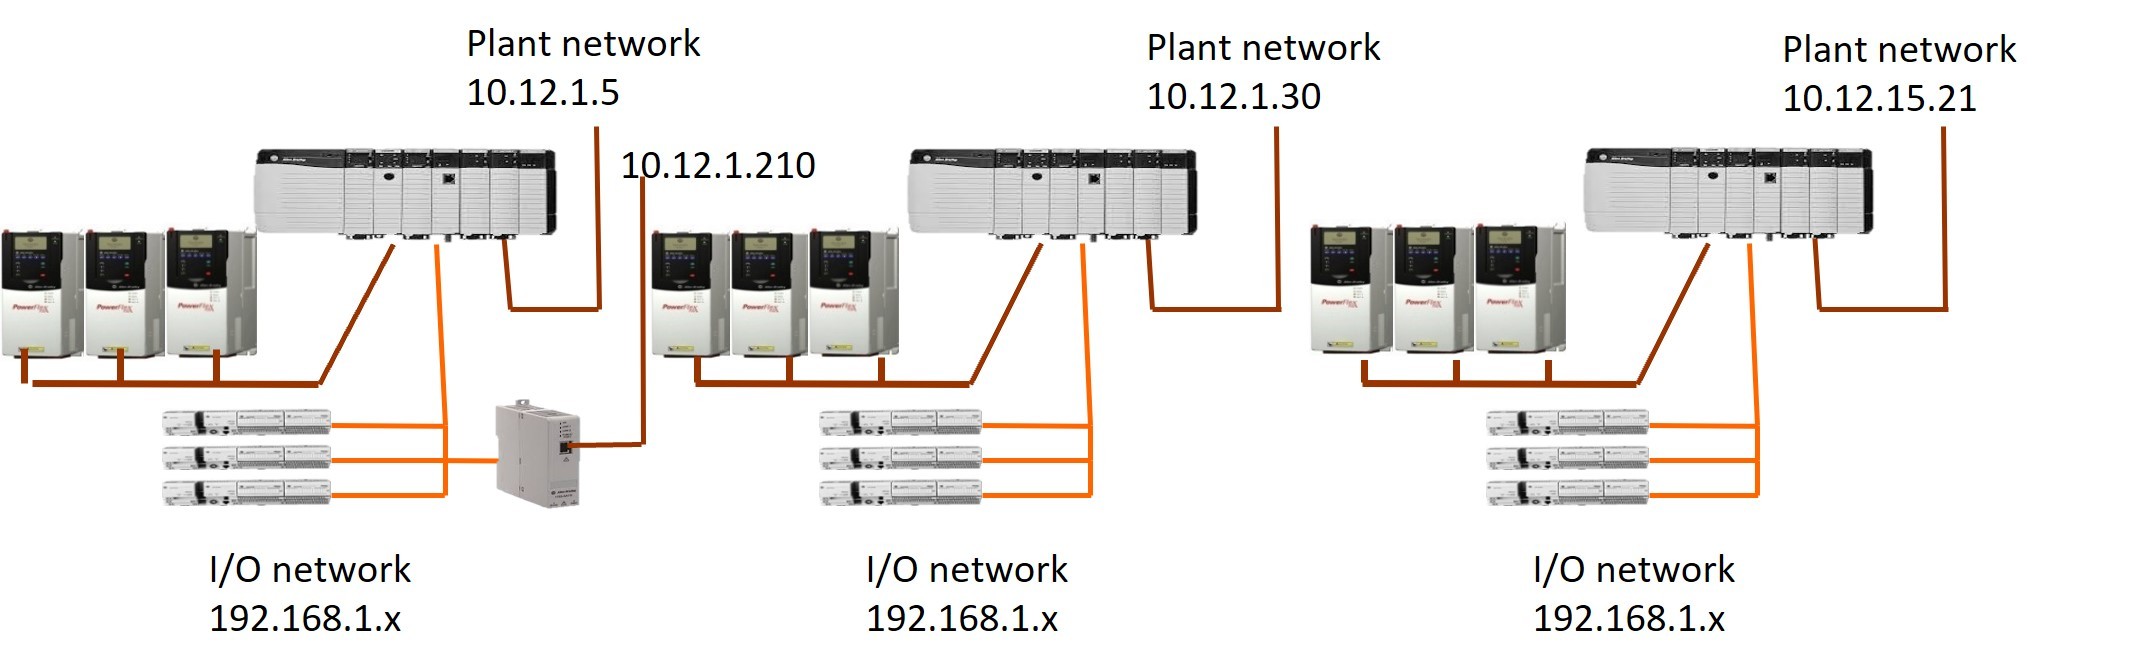 I/O Networks

